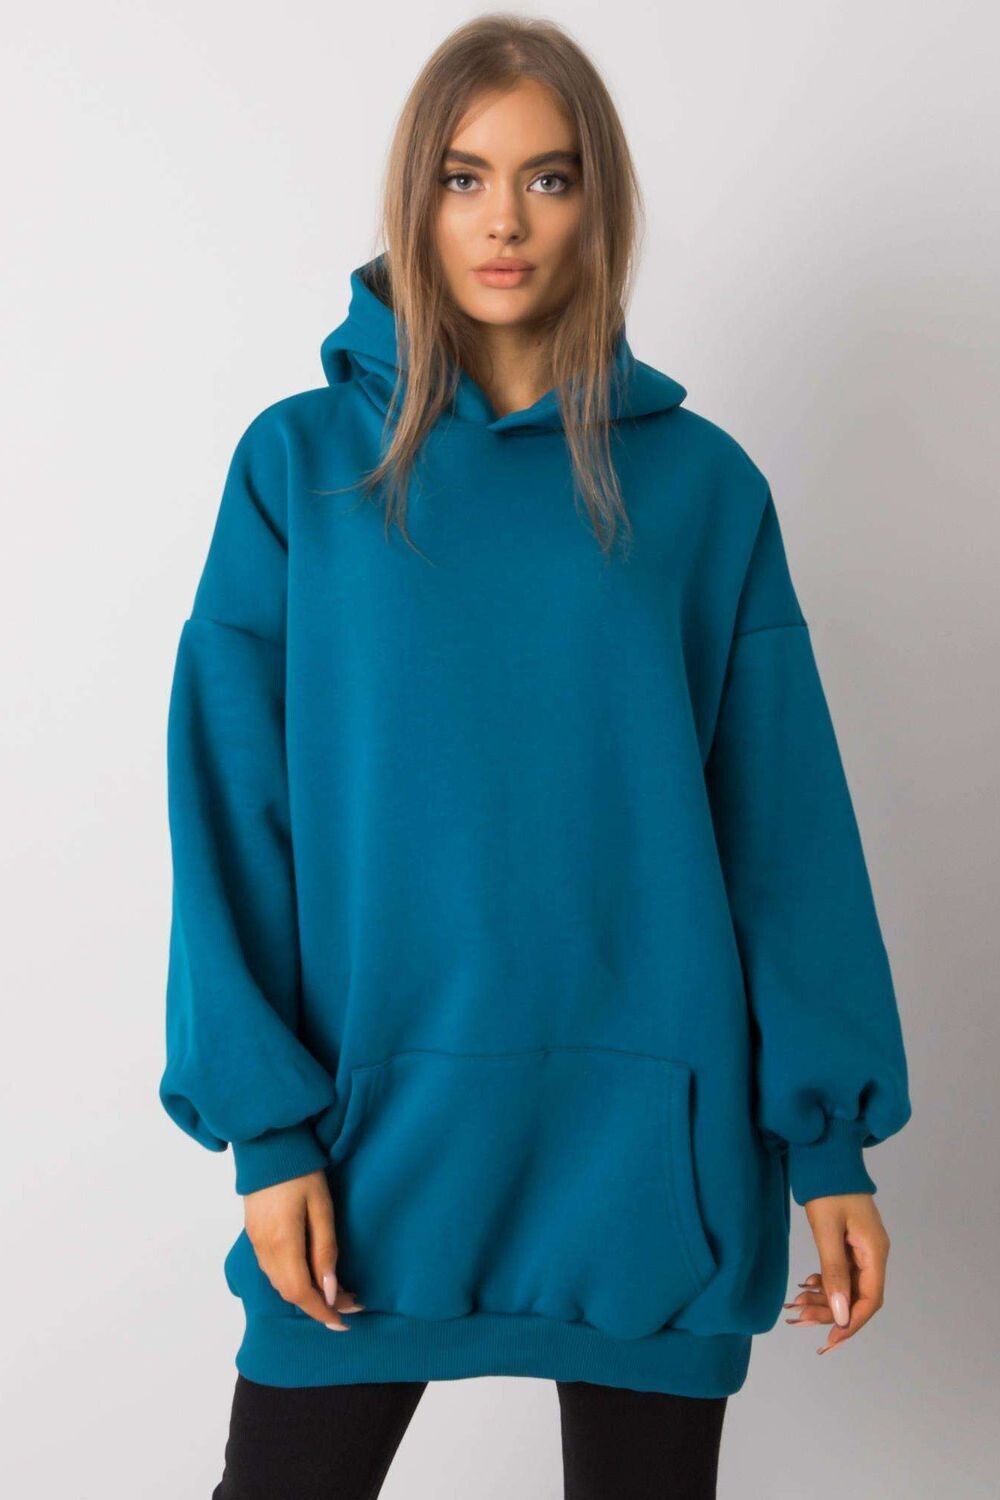 Sweater model 162836 BFG